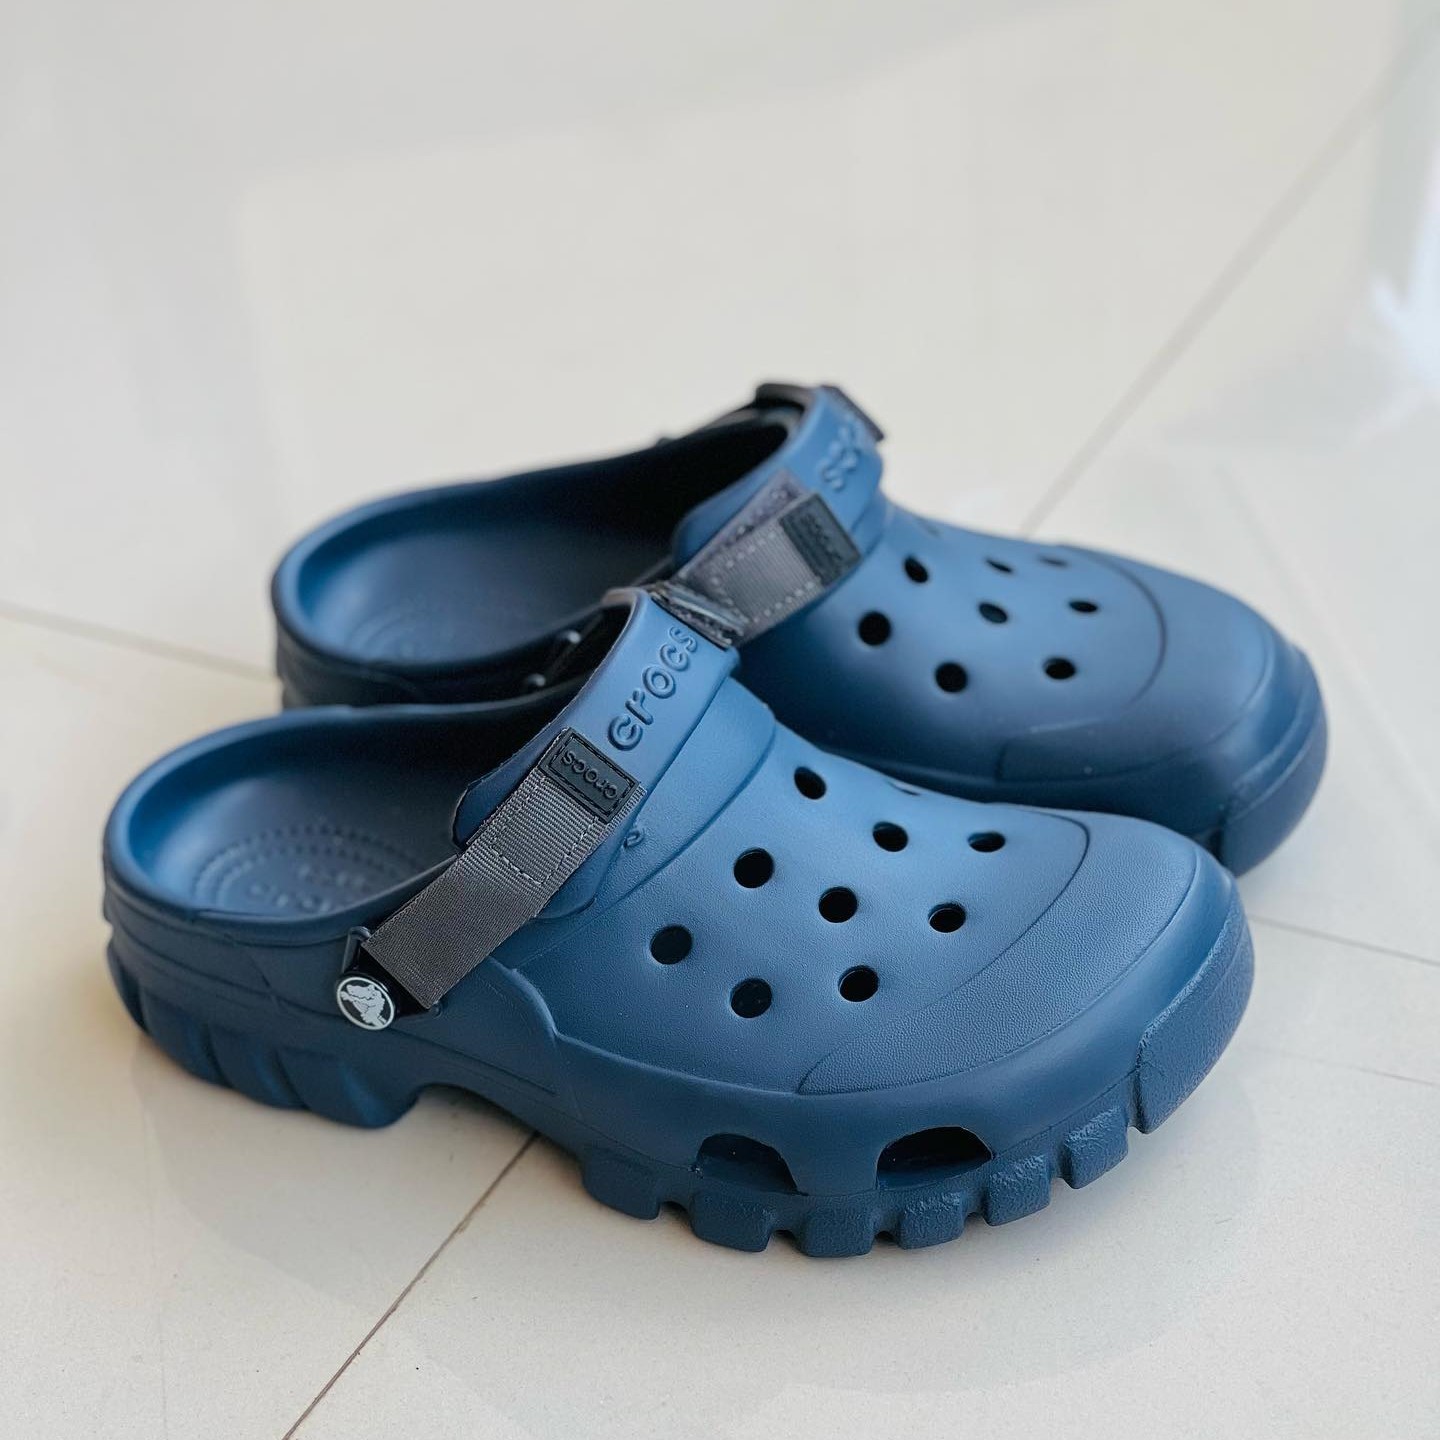 Crocs Literide Clog Blue-Black Sandal | Buy Online At The Best Price In ...